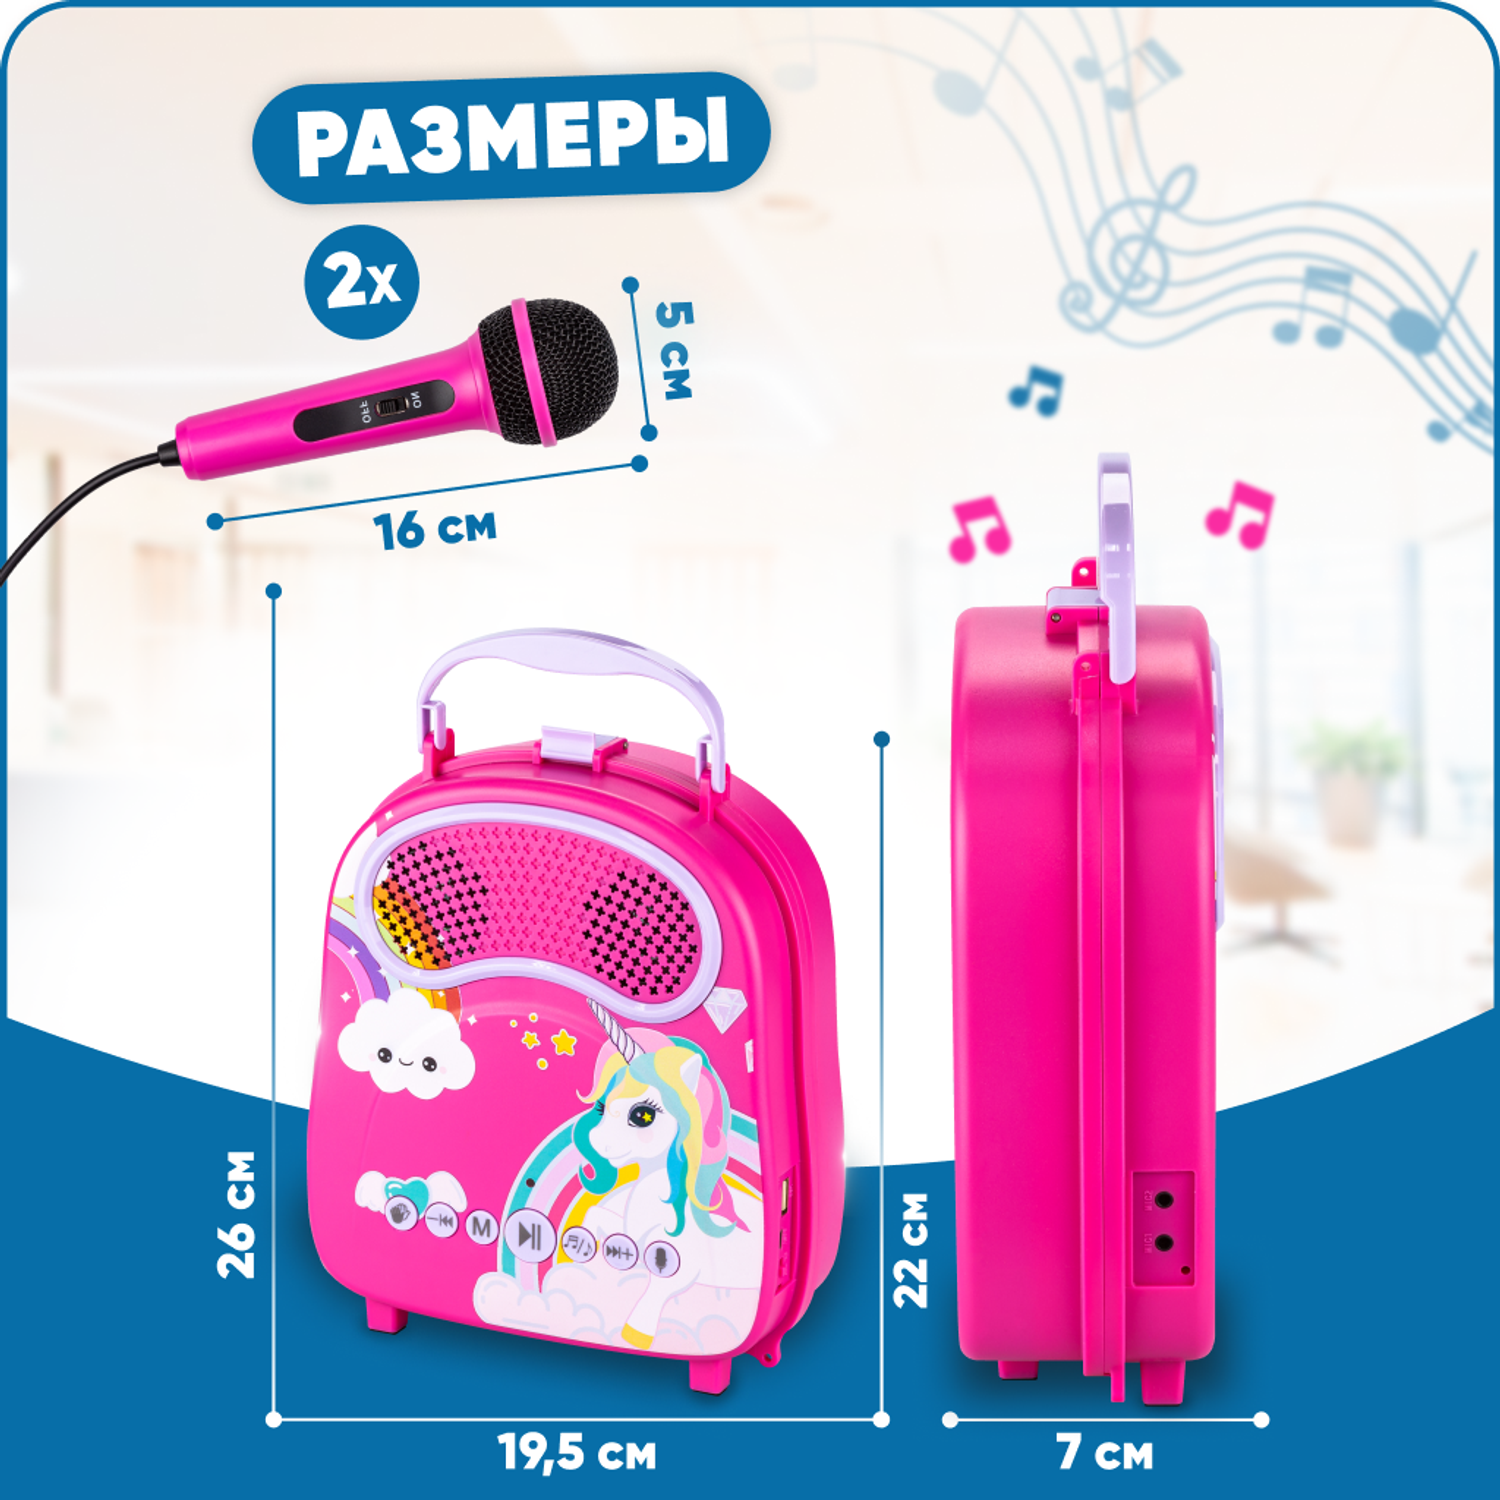 Караоке-рюкзачок для детей Solmax с микрофоном и колонкой Bluetooth розовый - фото 5